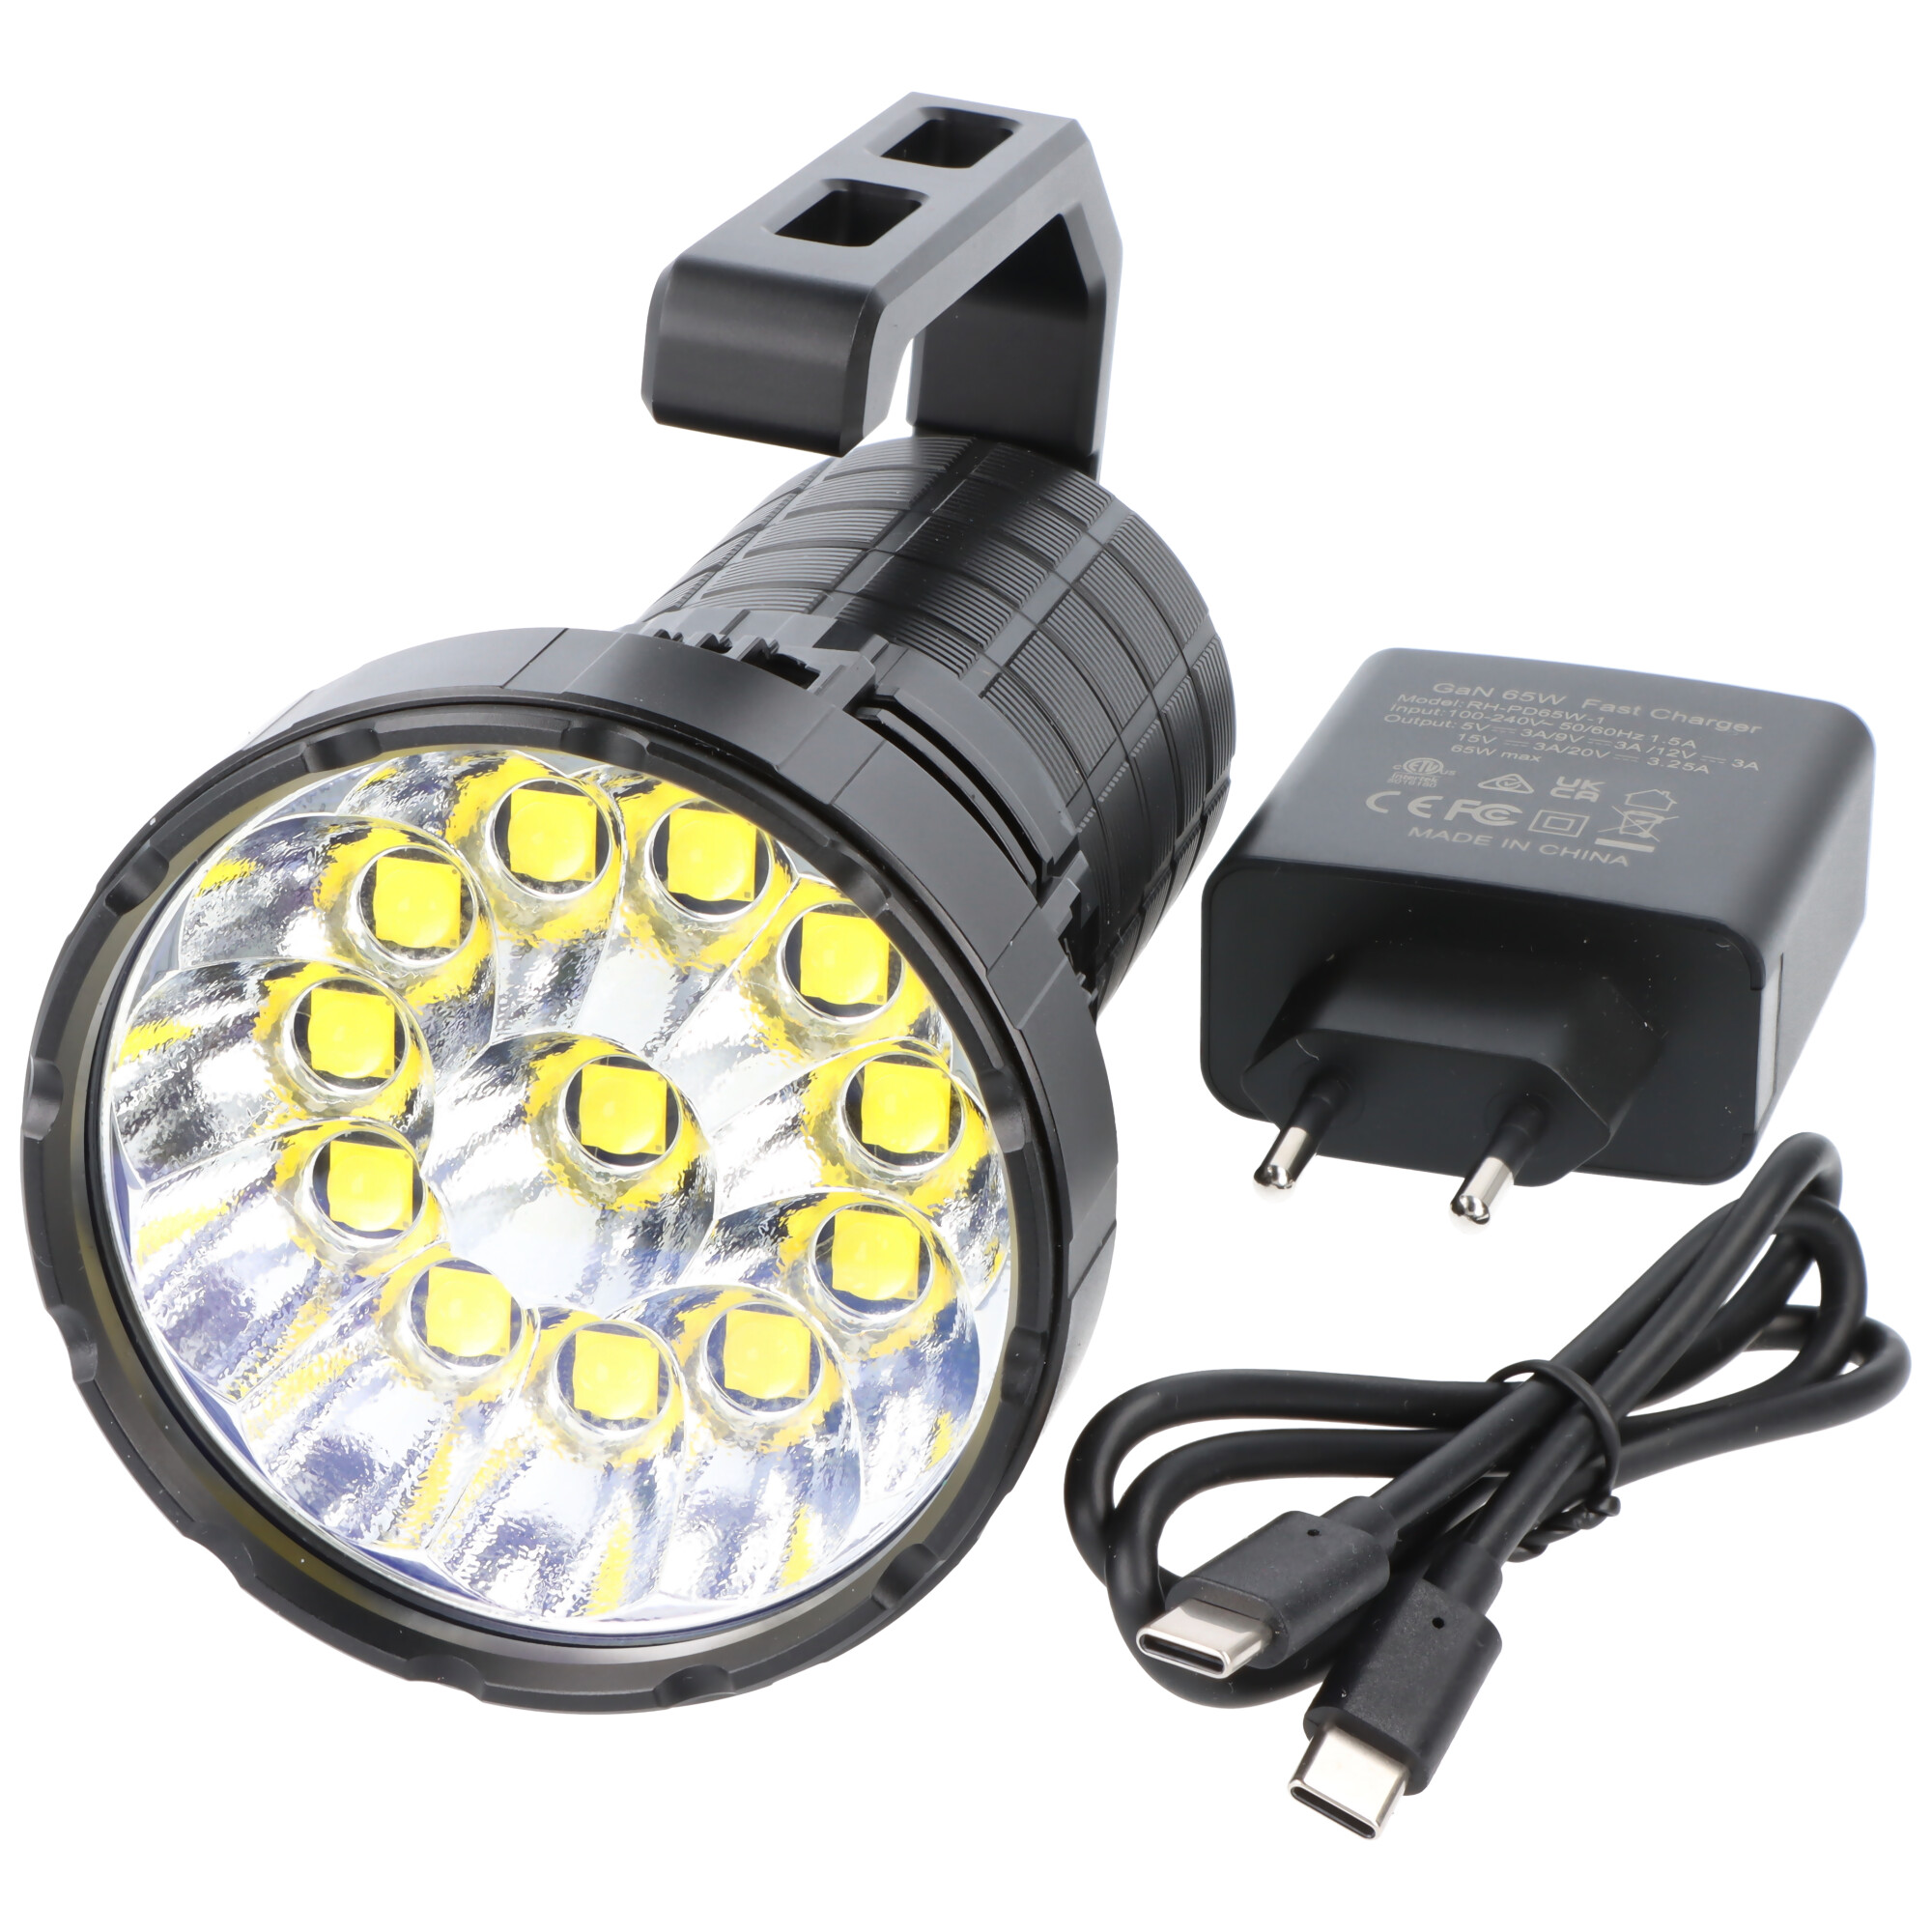 Imalent MS12 Mini C LED-Taschenlampe mit 65.000 Lumen, 1.036 Meter Leuchtweite, warmweiß, drei Lüfter, mit Haltegriff